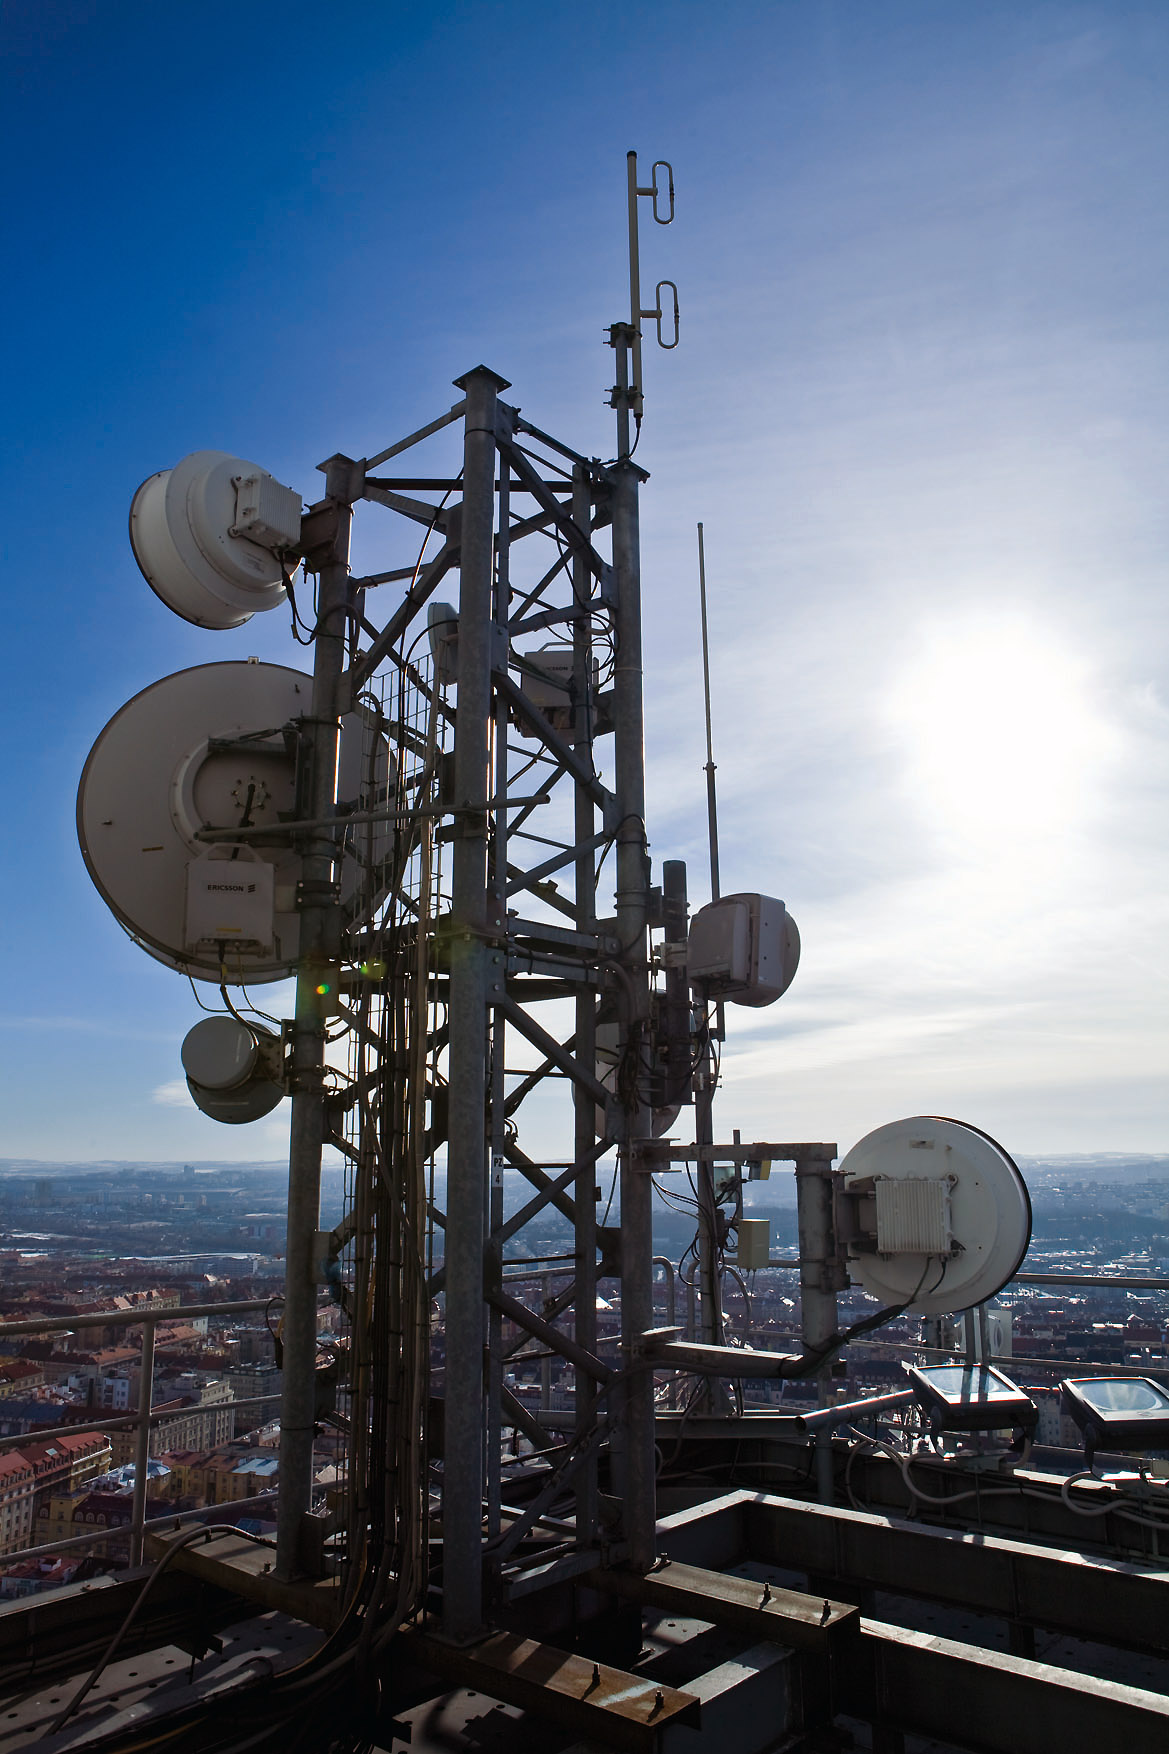 File:Antennas of Žižkov broadcasting tower - ČRa photo.jpg - Wikipedia